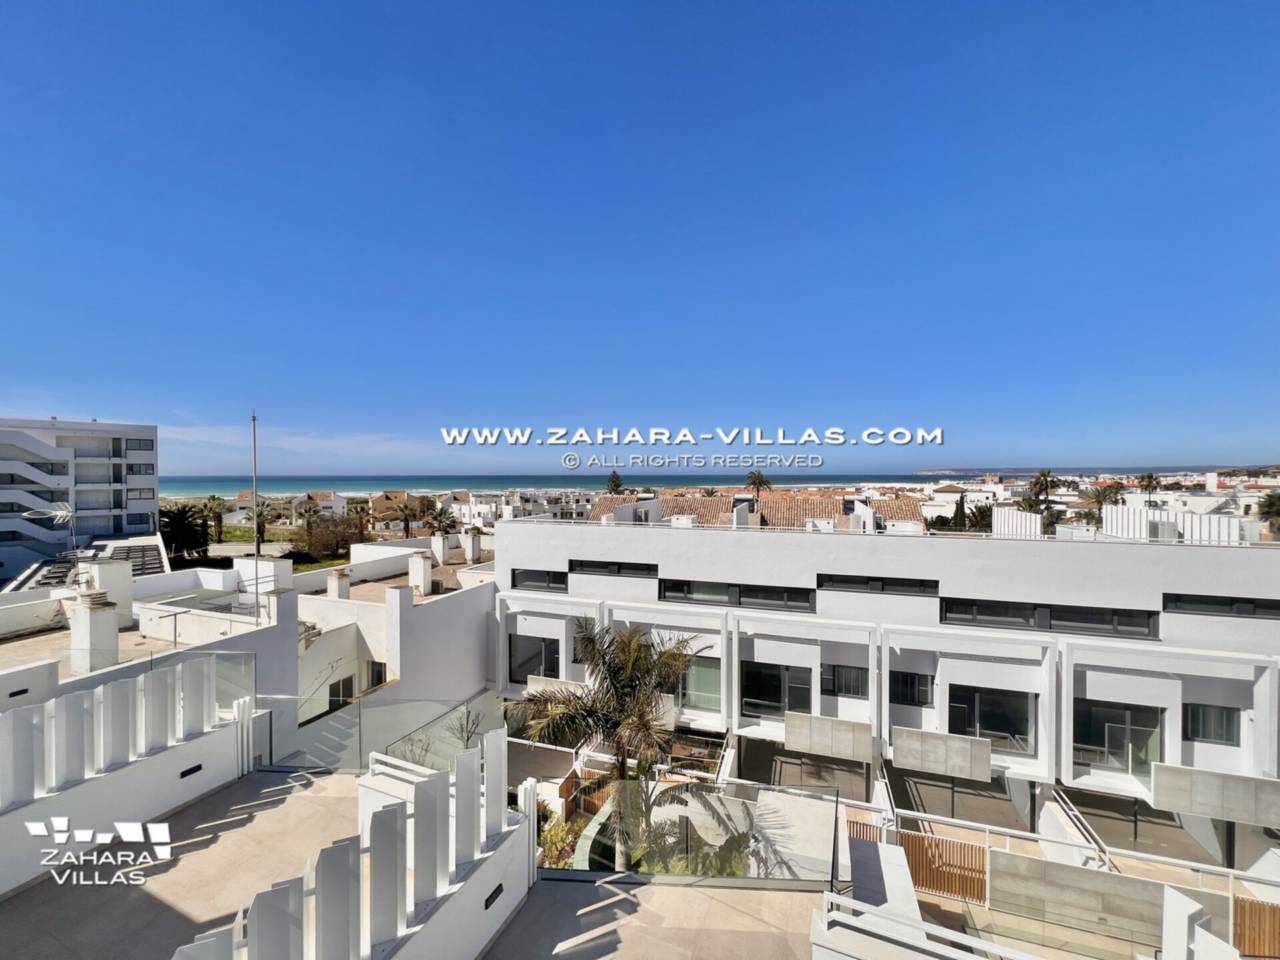 Imagen 46 de Promoción obra nueva terminada "EL OASIS DE ZAHARA" viviendas adosadas junto al mar